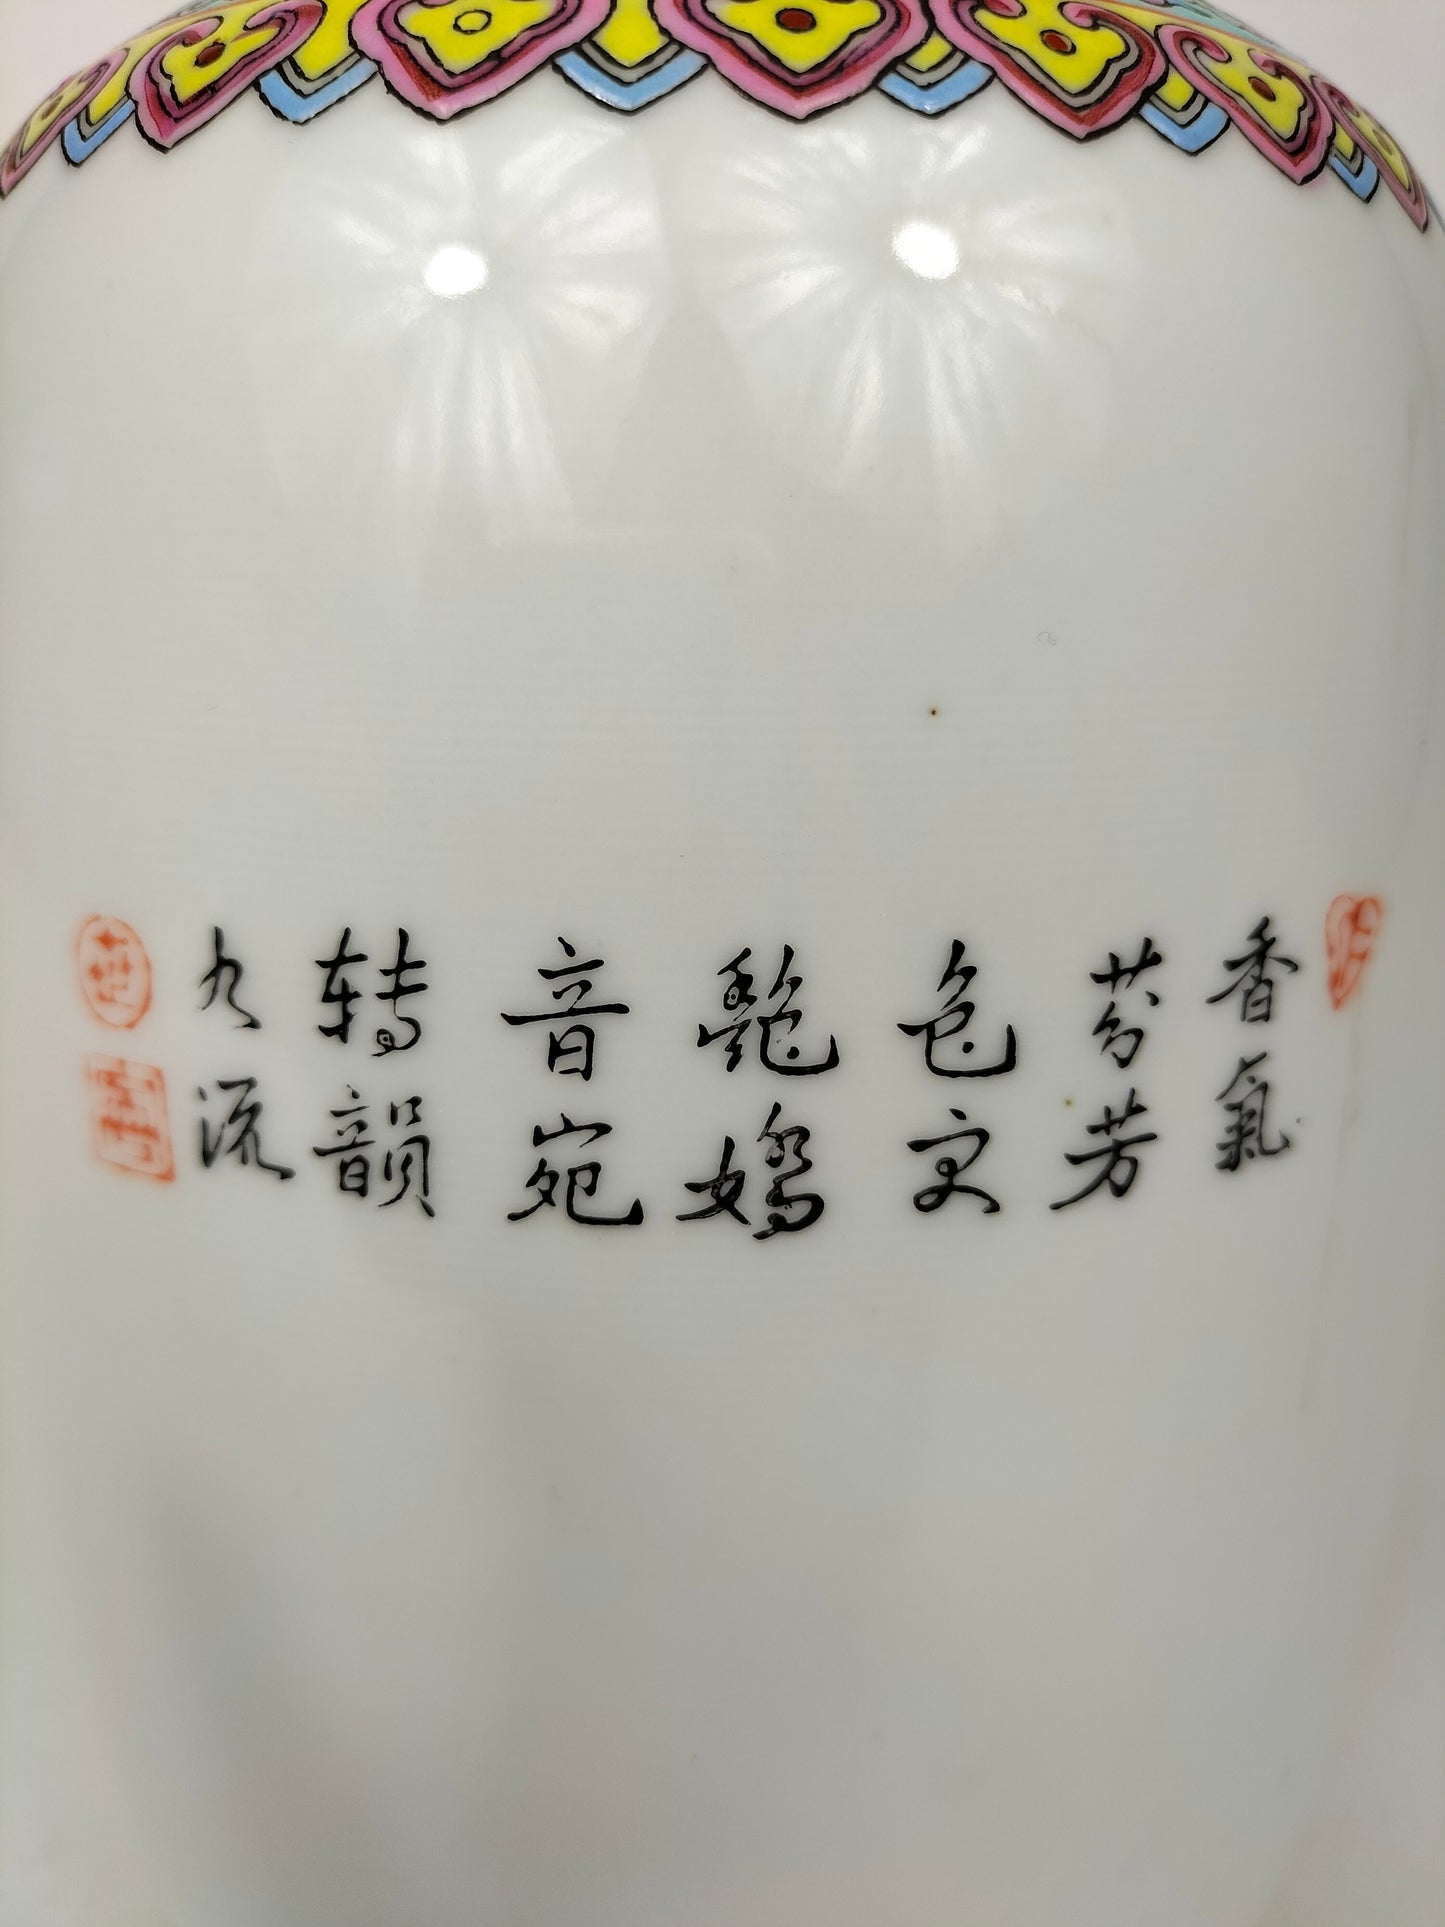 中国粉彩花鸟花瓶 // 景德镇 - 乾隆标记 - 20 世纪